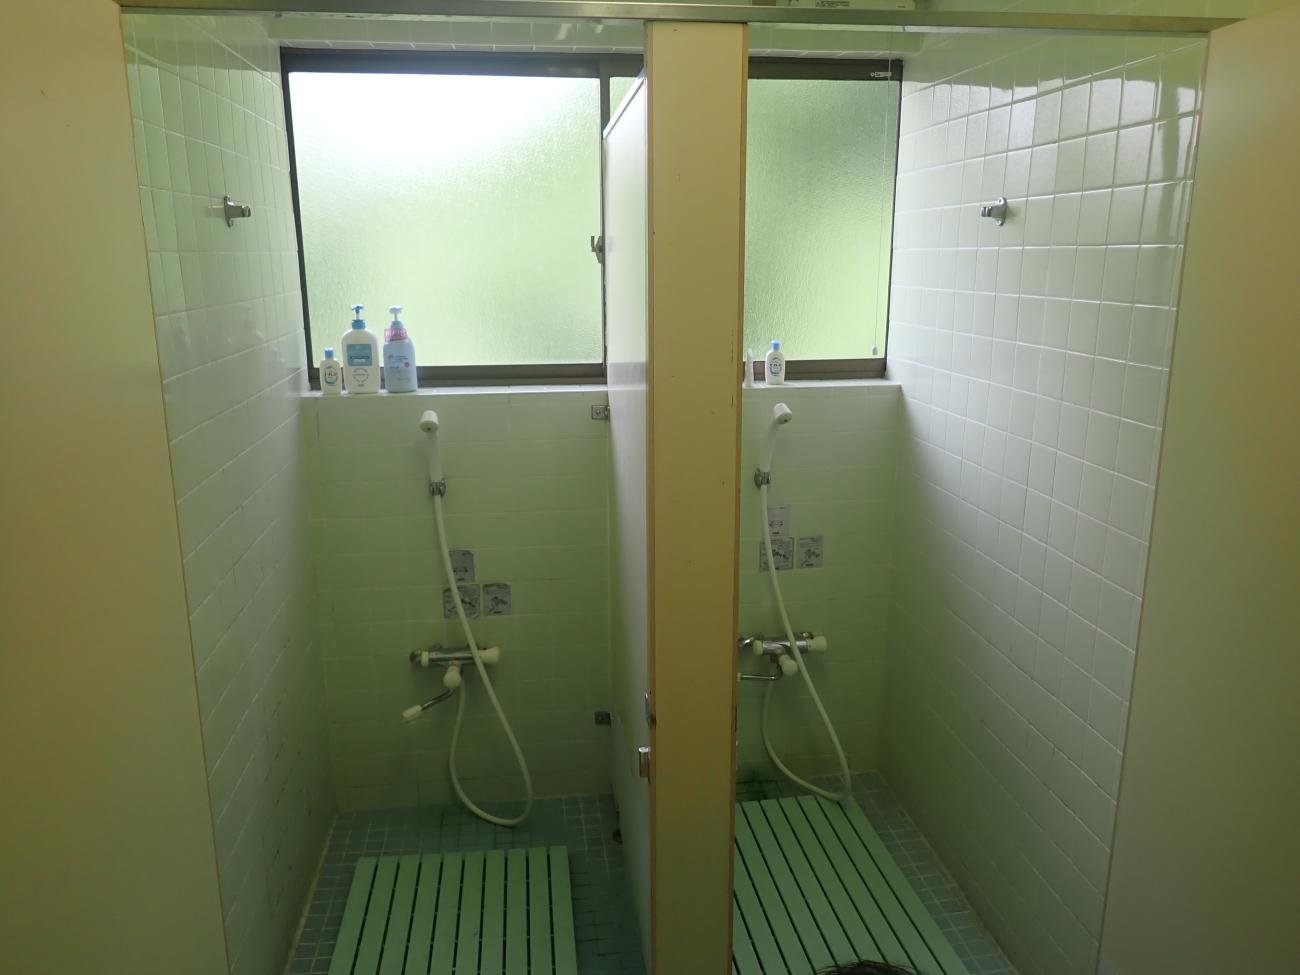 シャワー部屋が2つあり、窓枠にシャンプーやボディーソープが設置してある管理事務所内のコインシャワーの写真